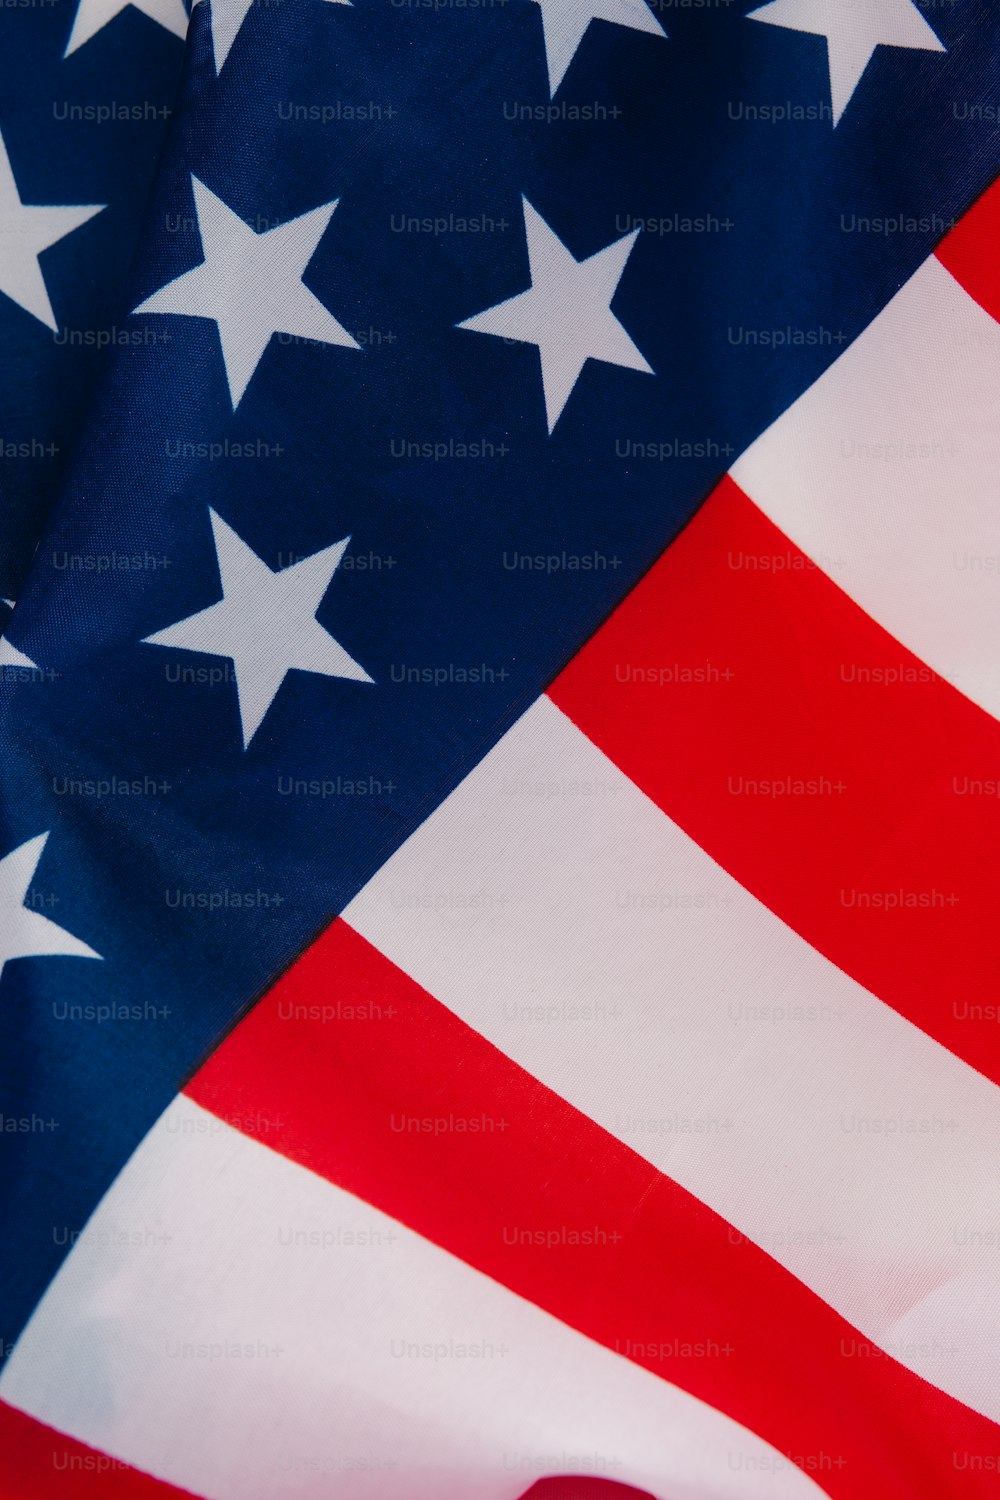 Un primer plano de una bandera estadounidense